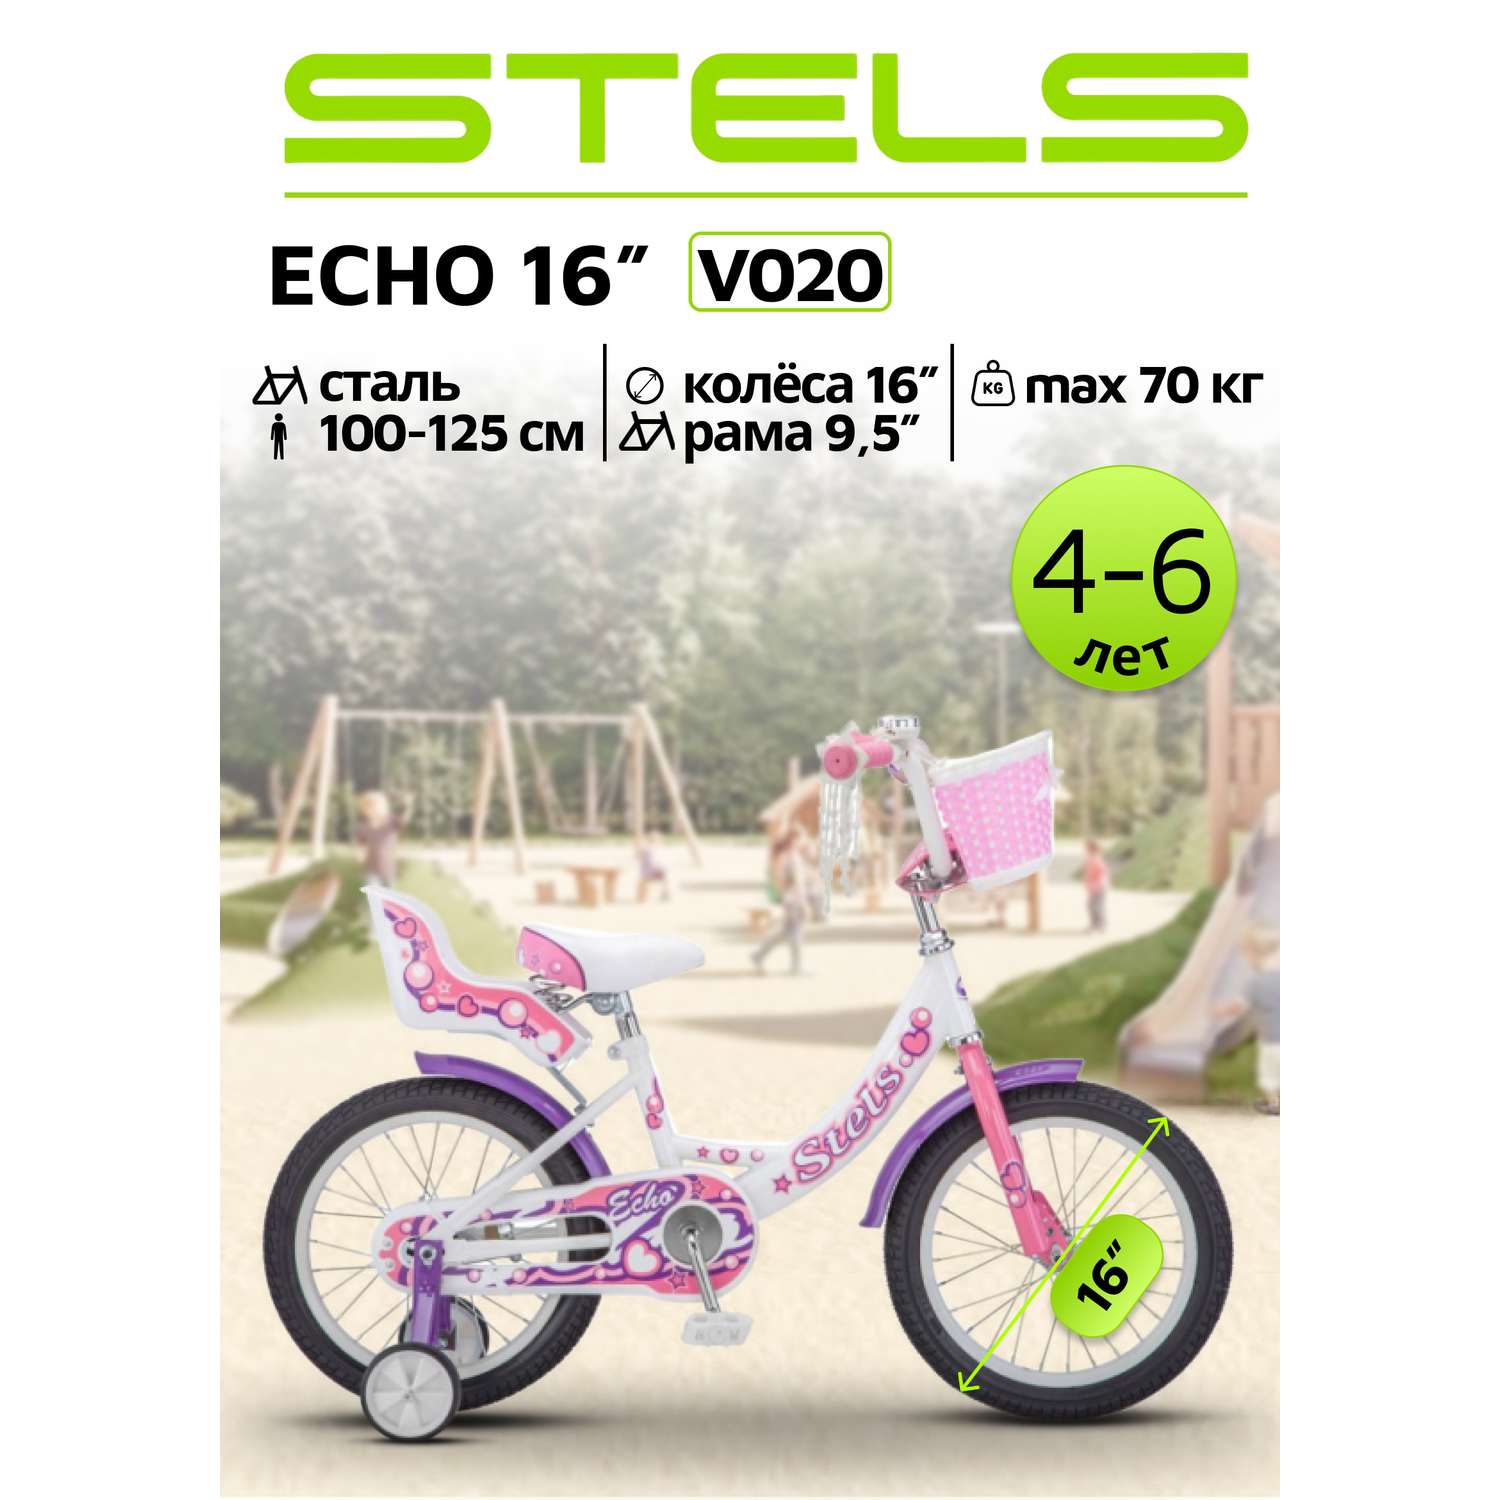 Велосипед STELS ECHO 16 V020 - фото 1